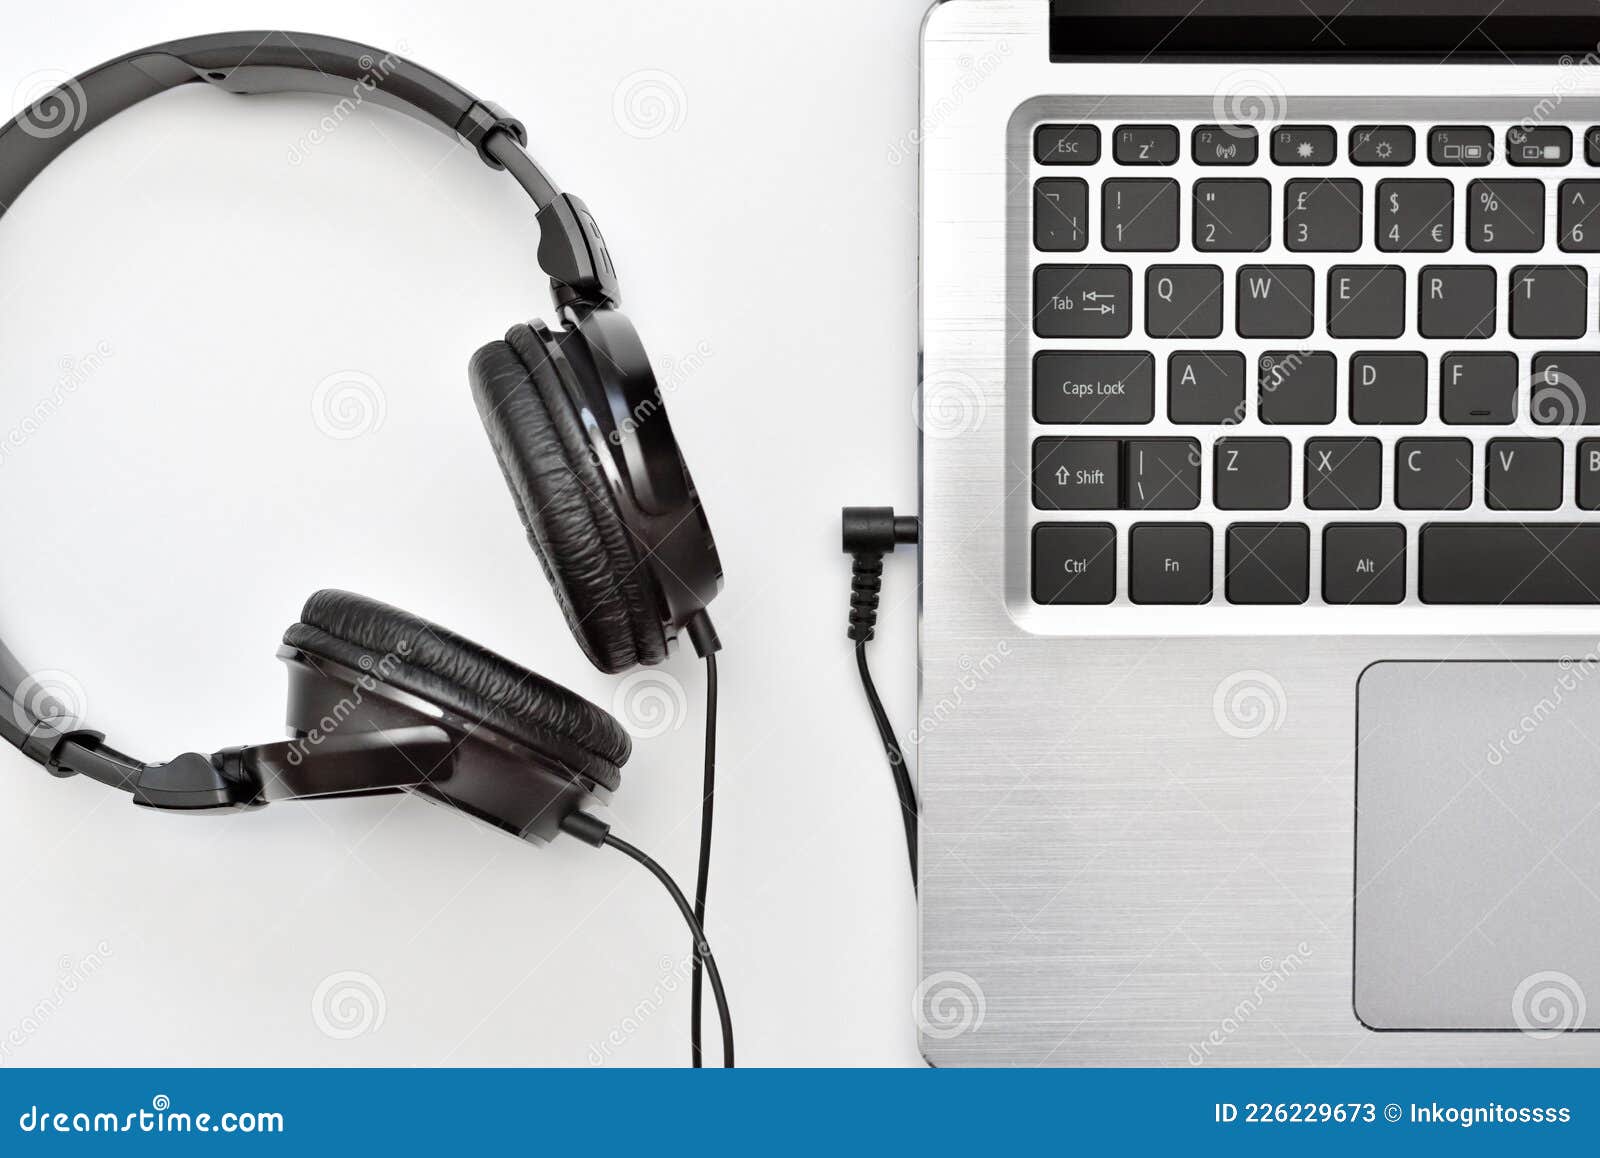 Portátil Con Audífonos Para Escuchar Música Y Audiolibros En Línea Aprendizajes De Trabajo Remoto. Imagen de archivo - Imagen de blanco, 226229673